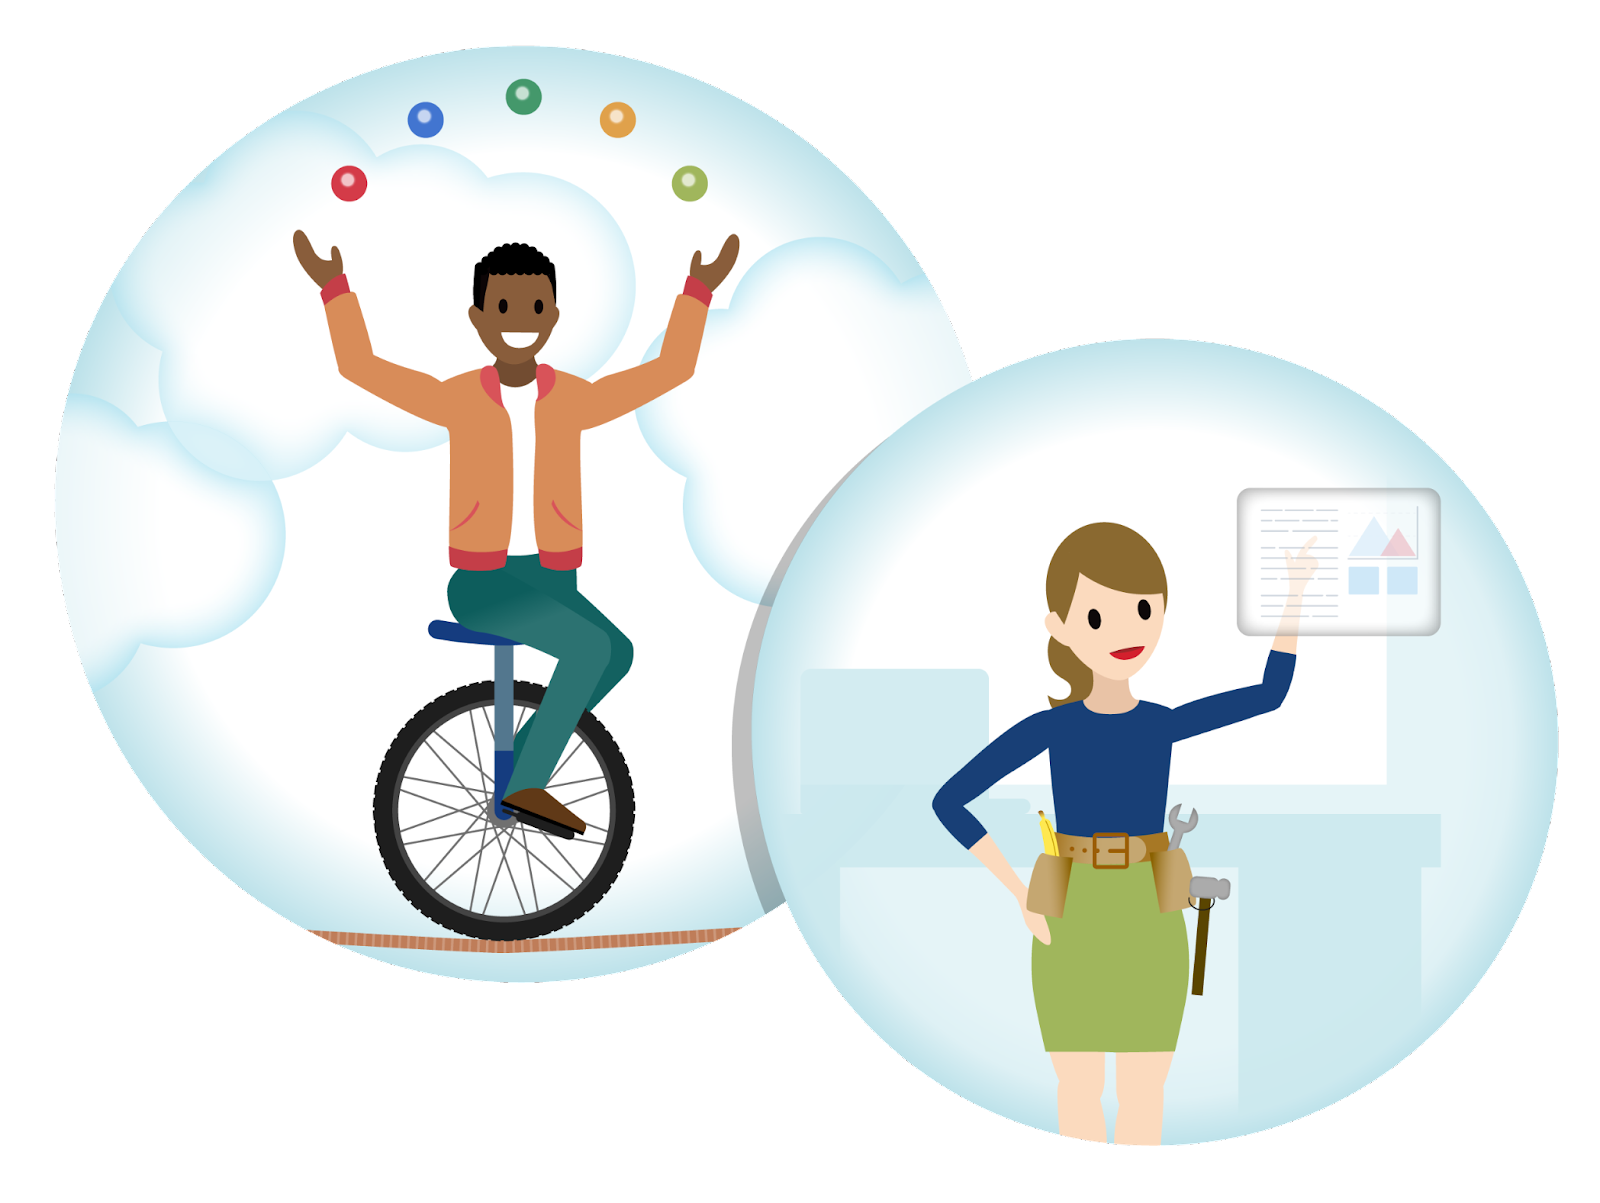 Un marketeur jongle sur un monocycle, tandis qu’une marketeuse portant une ceinture à outils étudie un écran.